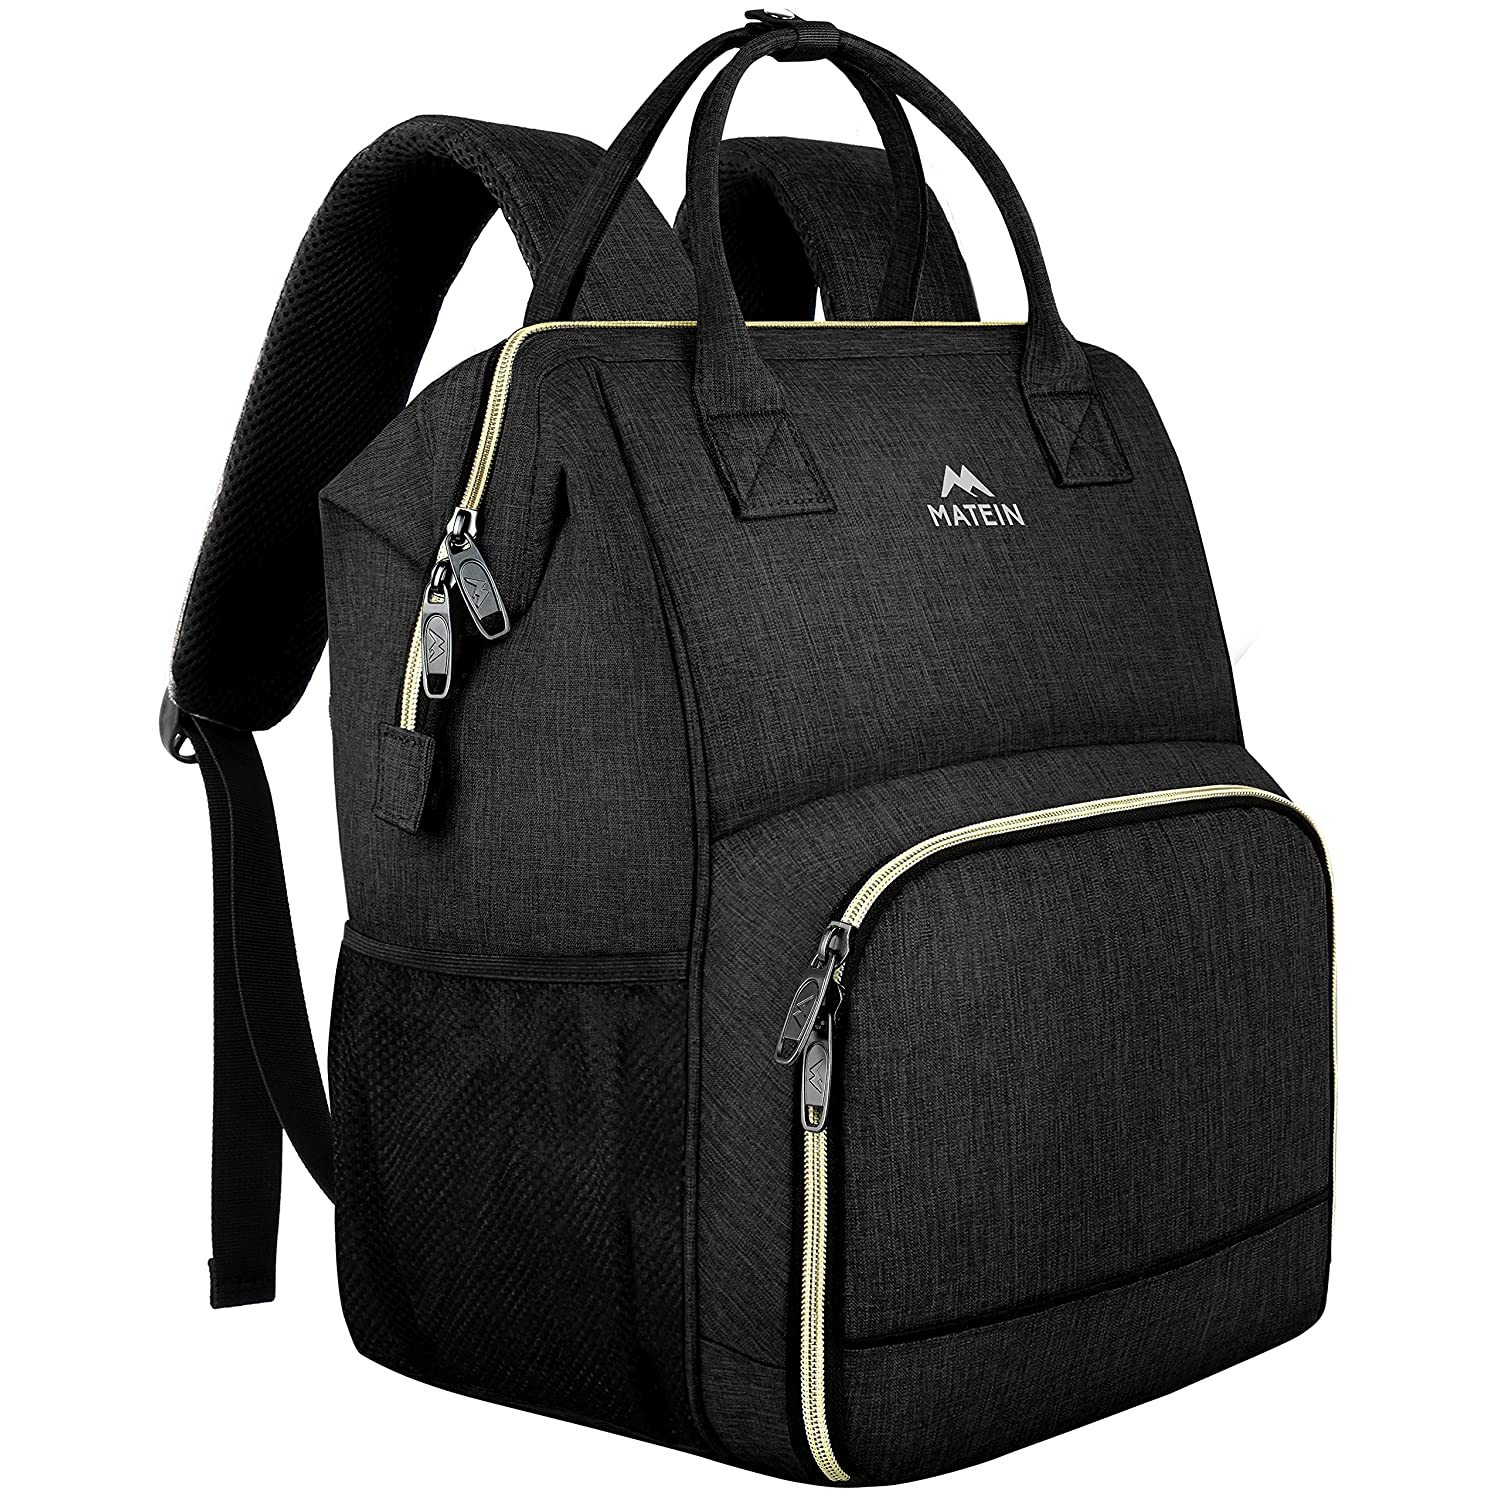 Laptop Backpack For Women, Cooler Backpack Lunch Bag School Bookbag Wi